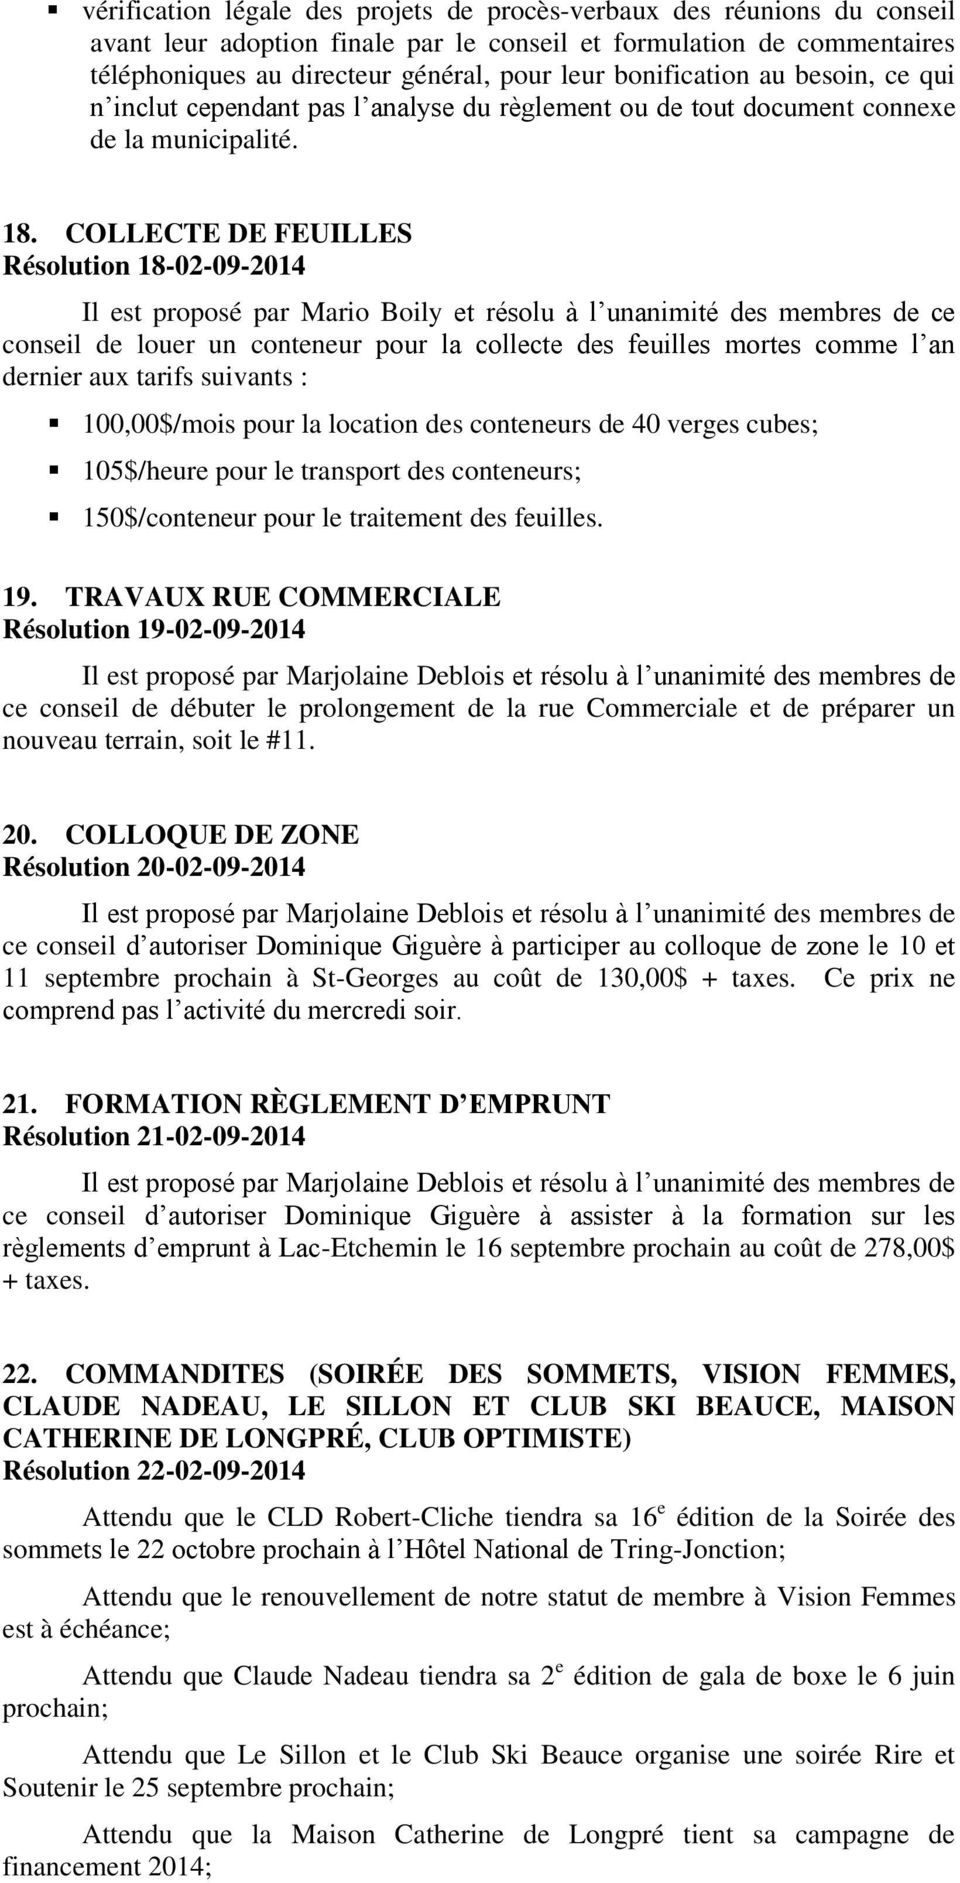 COLLECTE DE FEUILLES Résolution 18-02-09-2014 Il est proposé par Mario Boily et résolu à l unanimité des membres de ce conseil de louer un conteneur pour la collecte des feuilles mortes comme l an